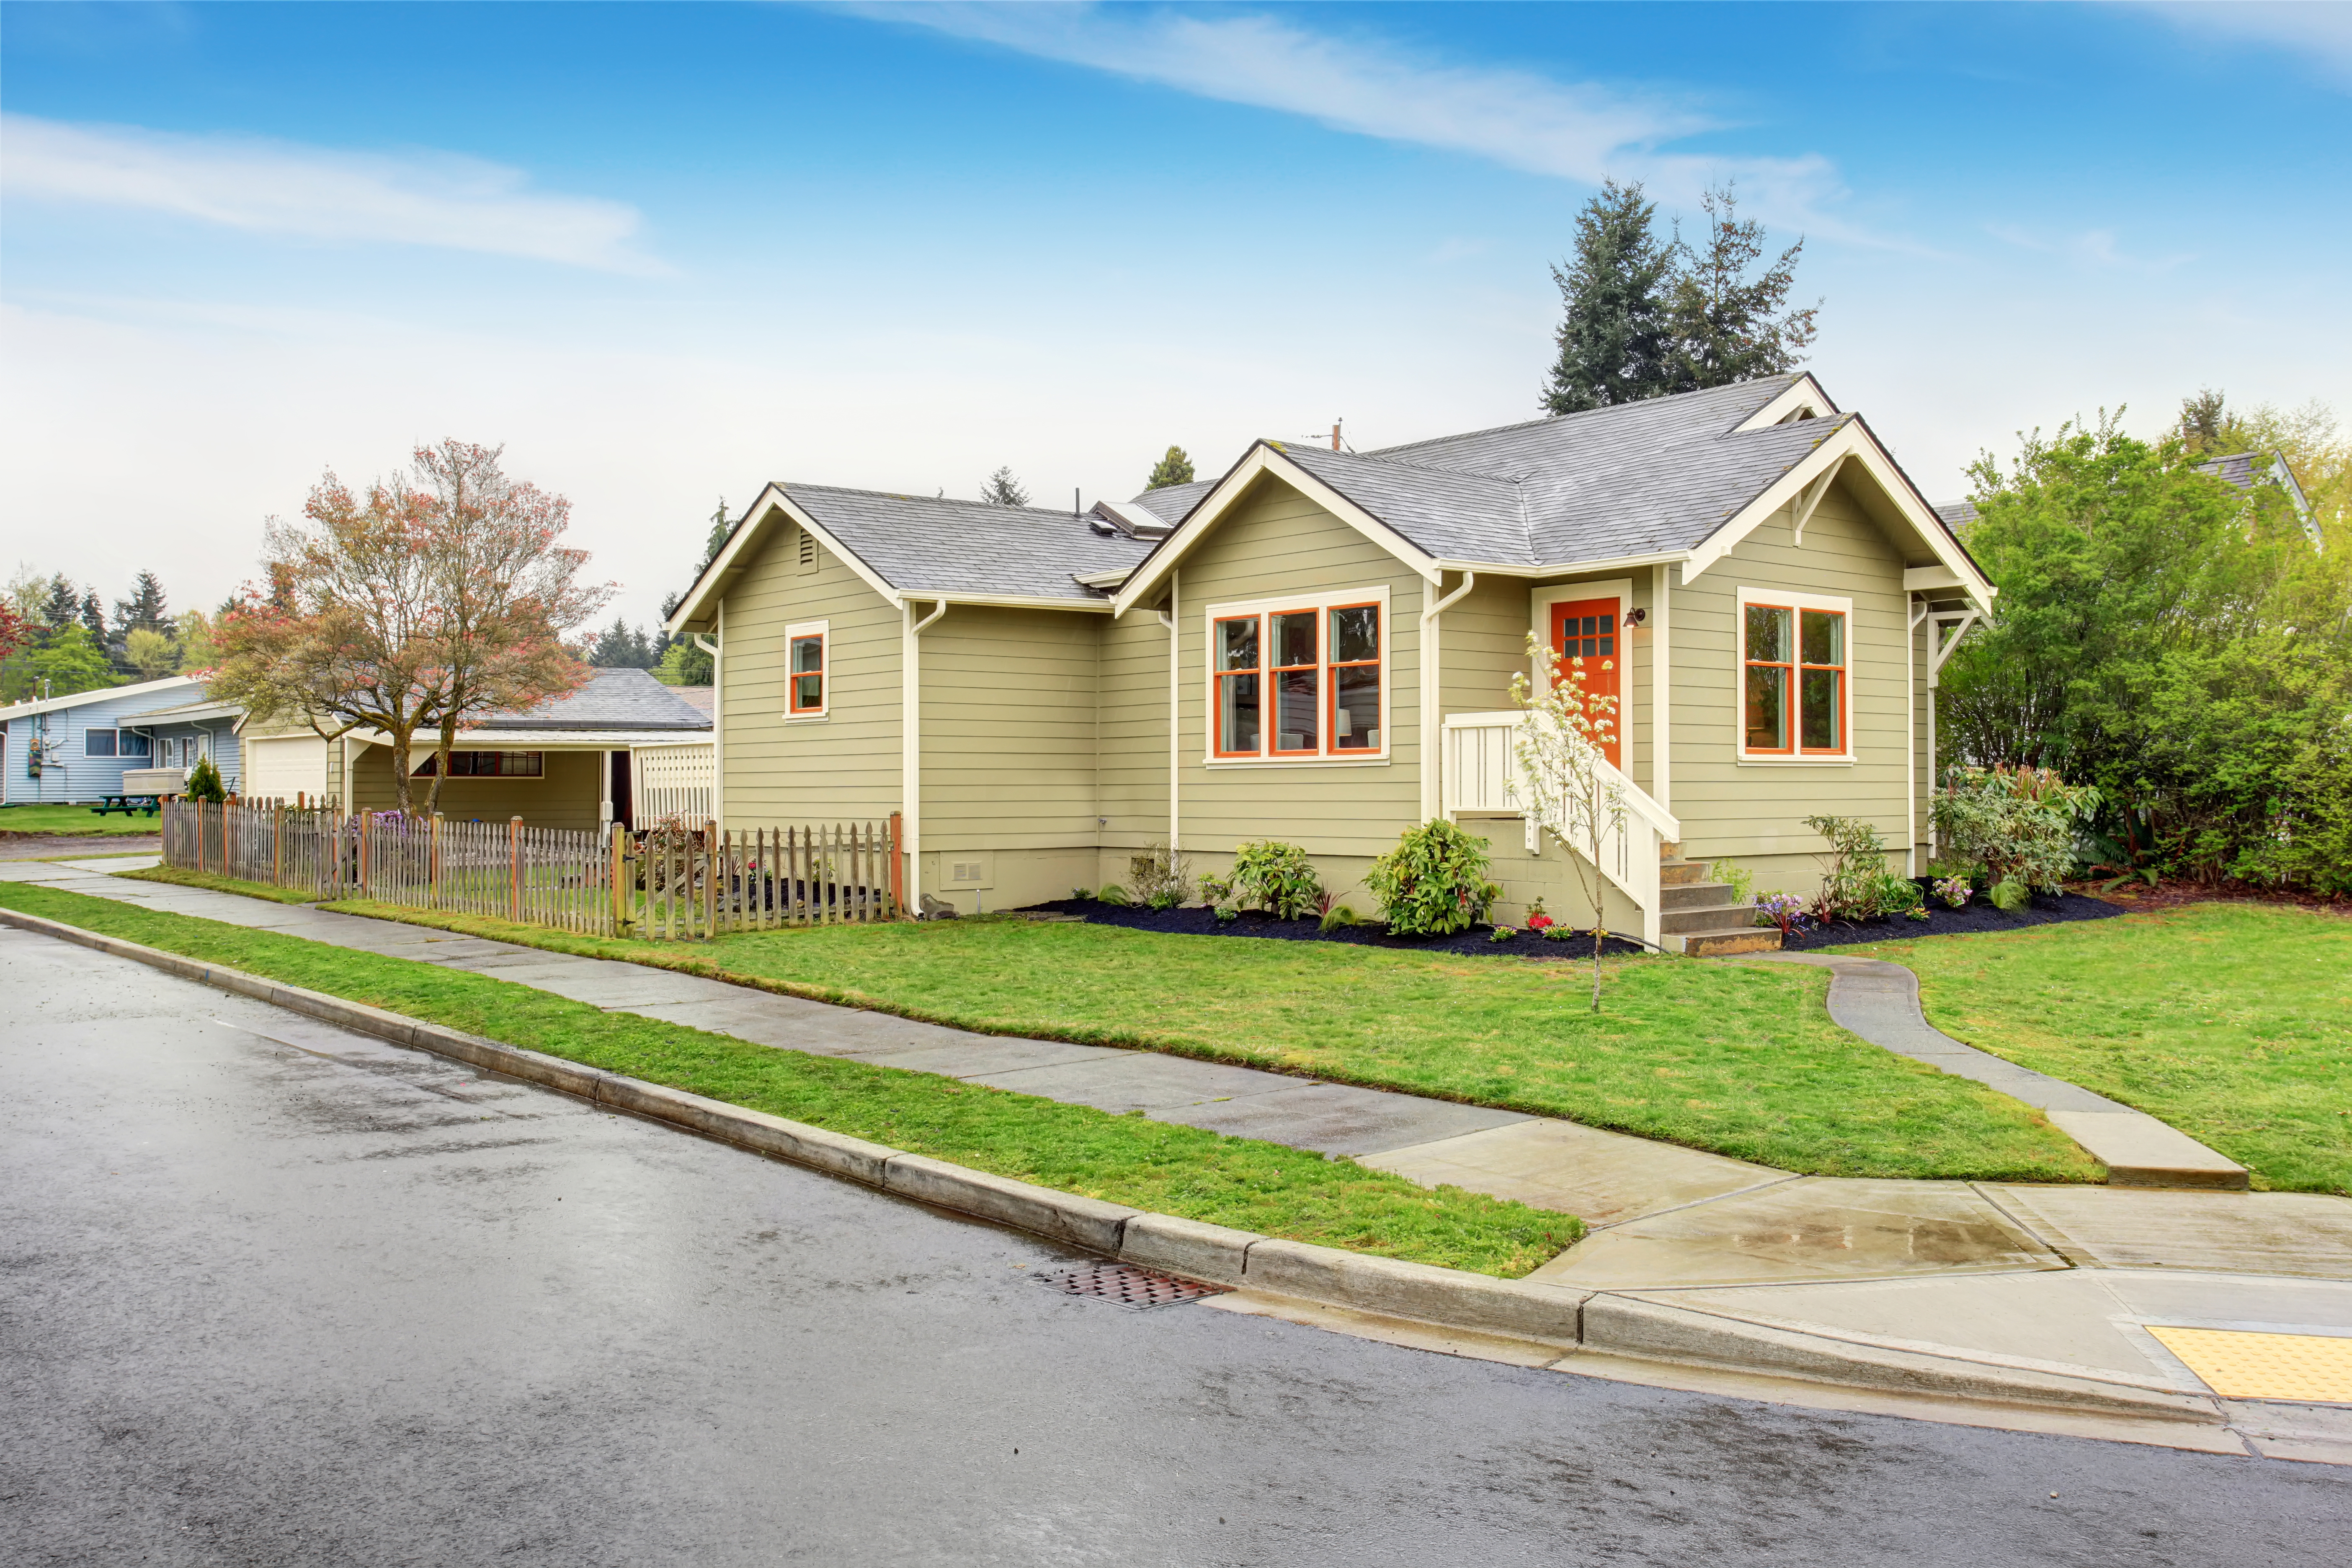 Antigua casita verde americana con porche. Césped verde alrededor y camino de entrada. | Fuente: Shutterstock